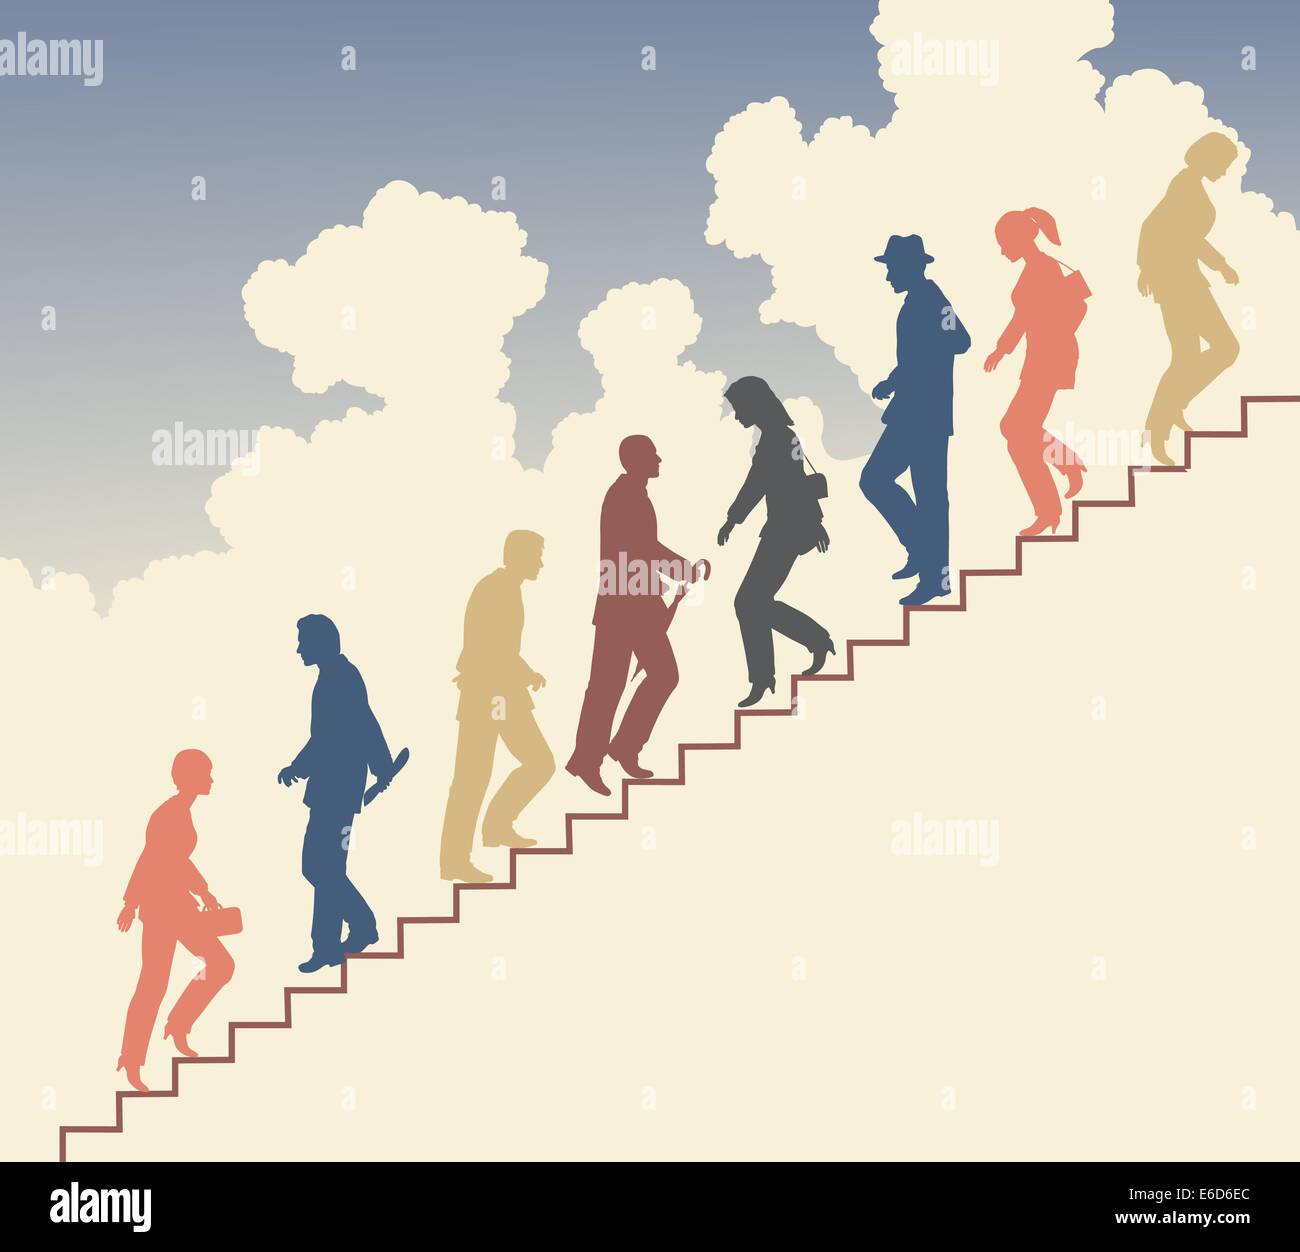 Silhouette vecteur modifiable colorés de personnes dans les escaliers contre le ciel Illustration de Vecteur